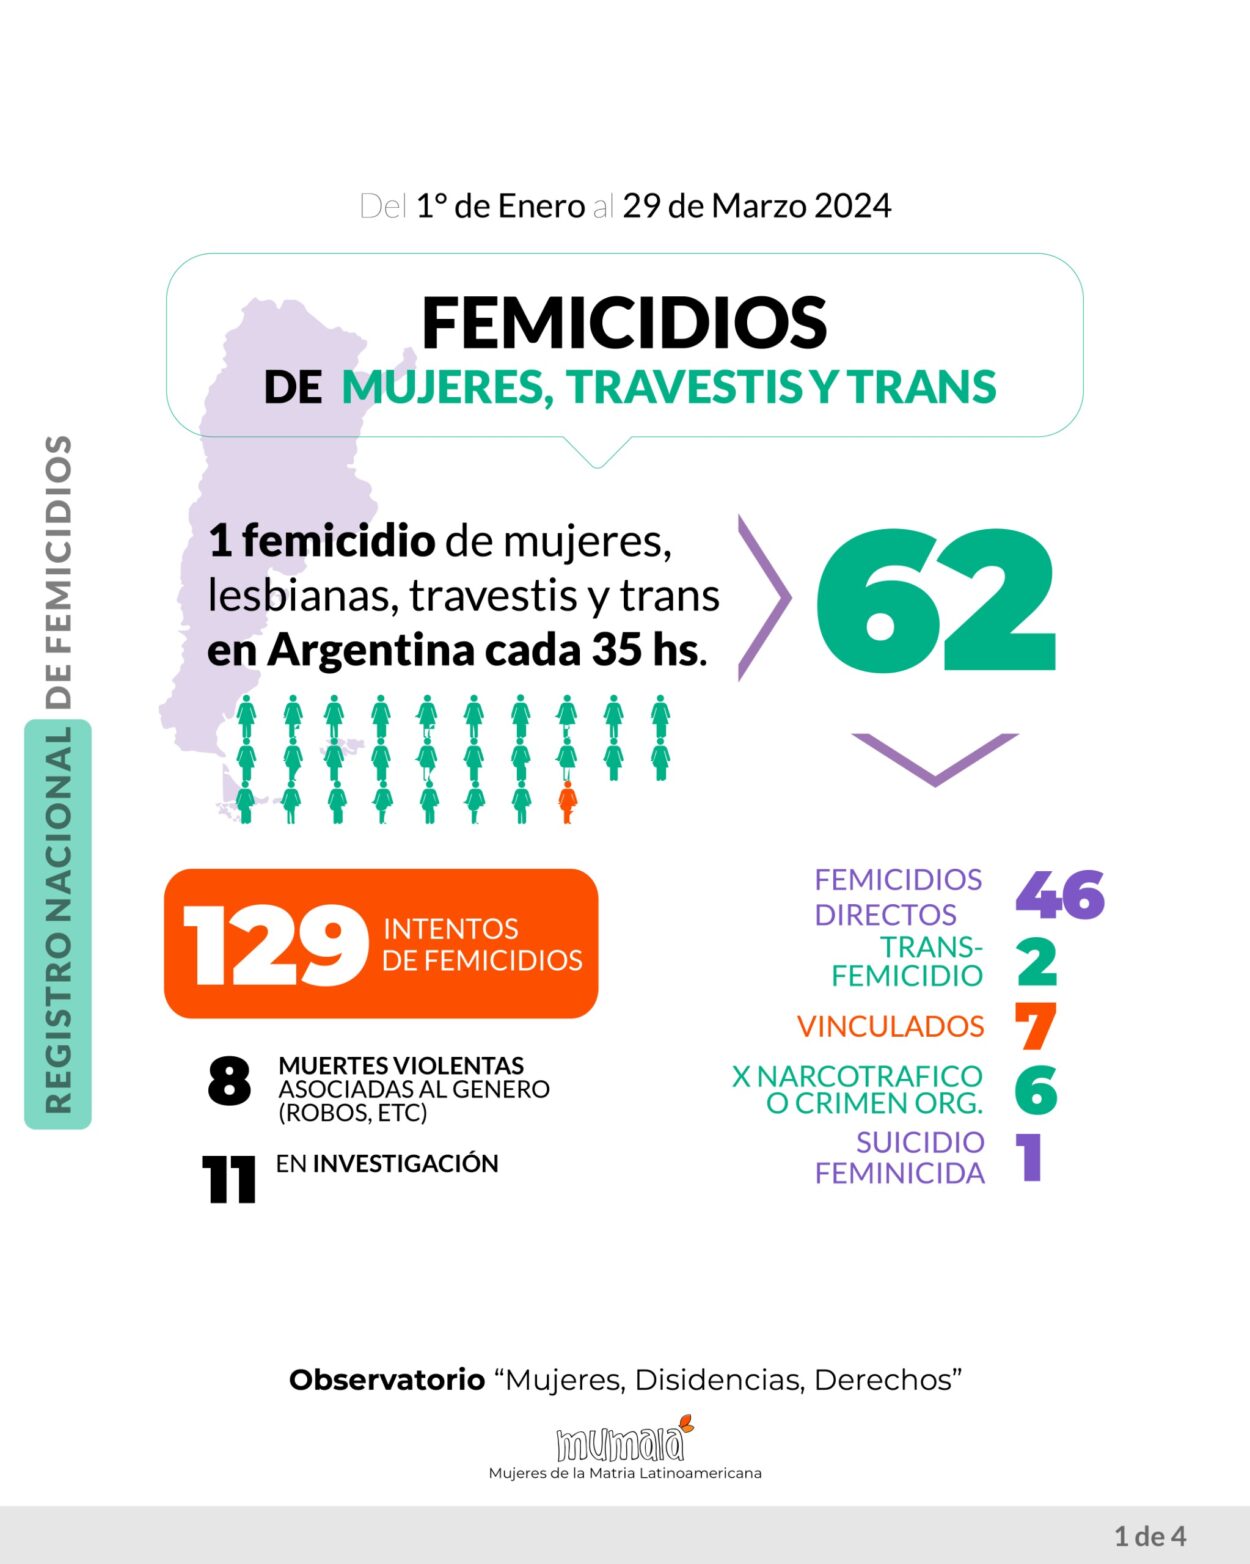 El Observatorio MuMaLa denunció que en 3 meses se han registrado 62 feminicidios, uno cada 35 horas imagen-1